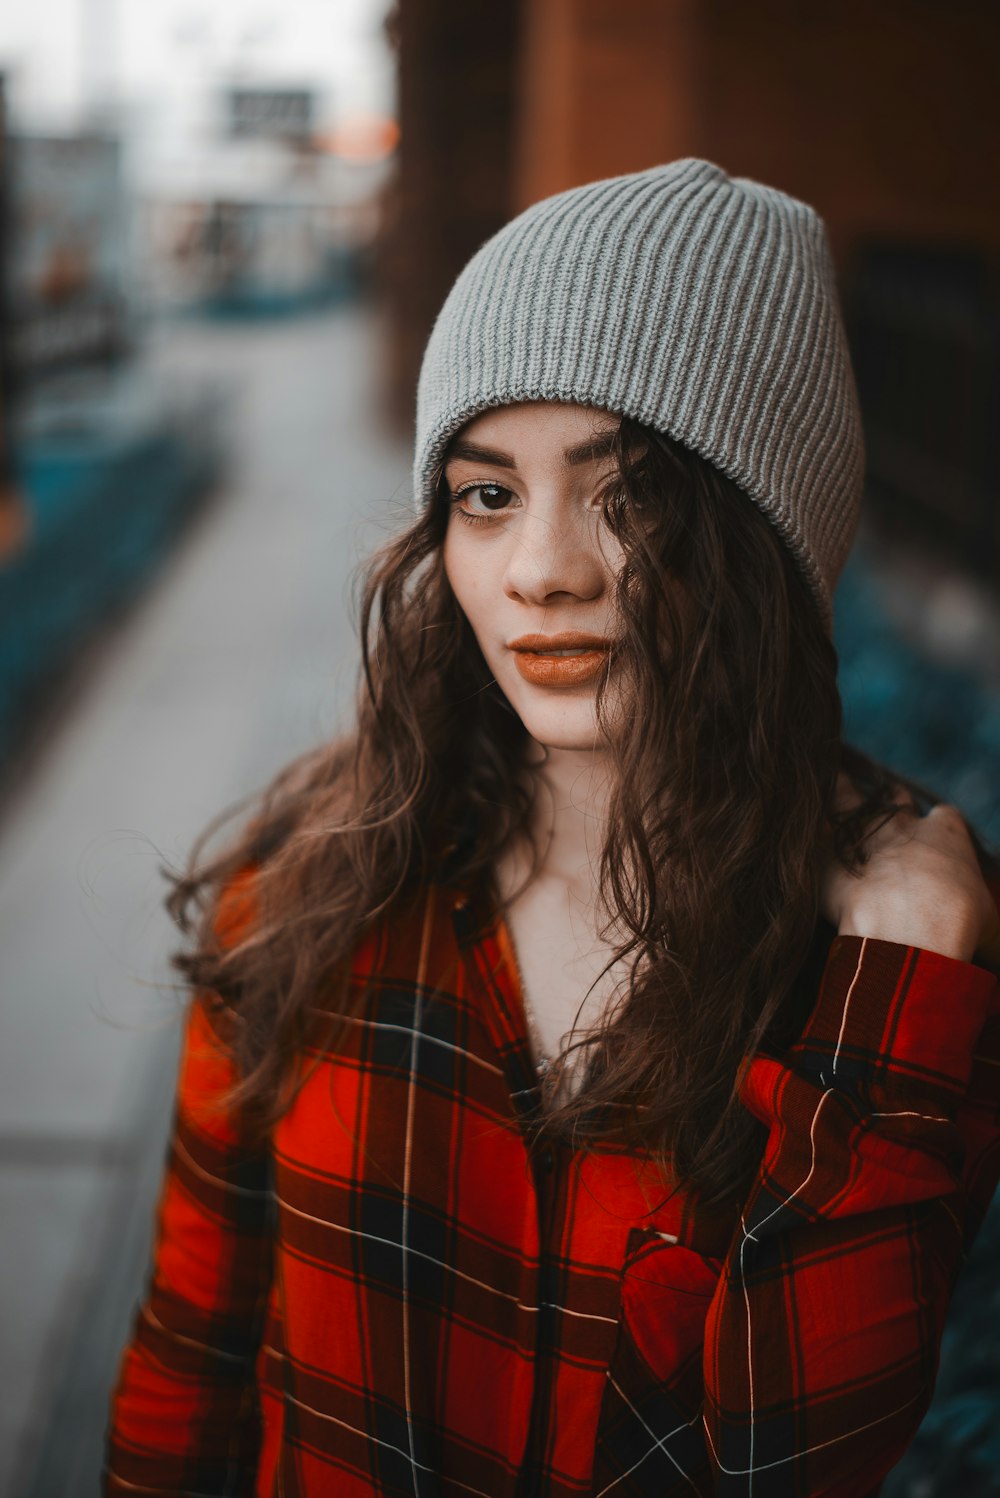 realce Incesante el primero Foto Mujer con chaqueta a cuadros roja y negra con gorra de punto gris –  Imagen Días gratis en Unsplash